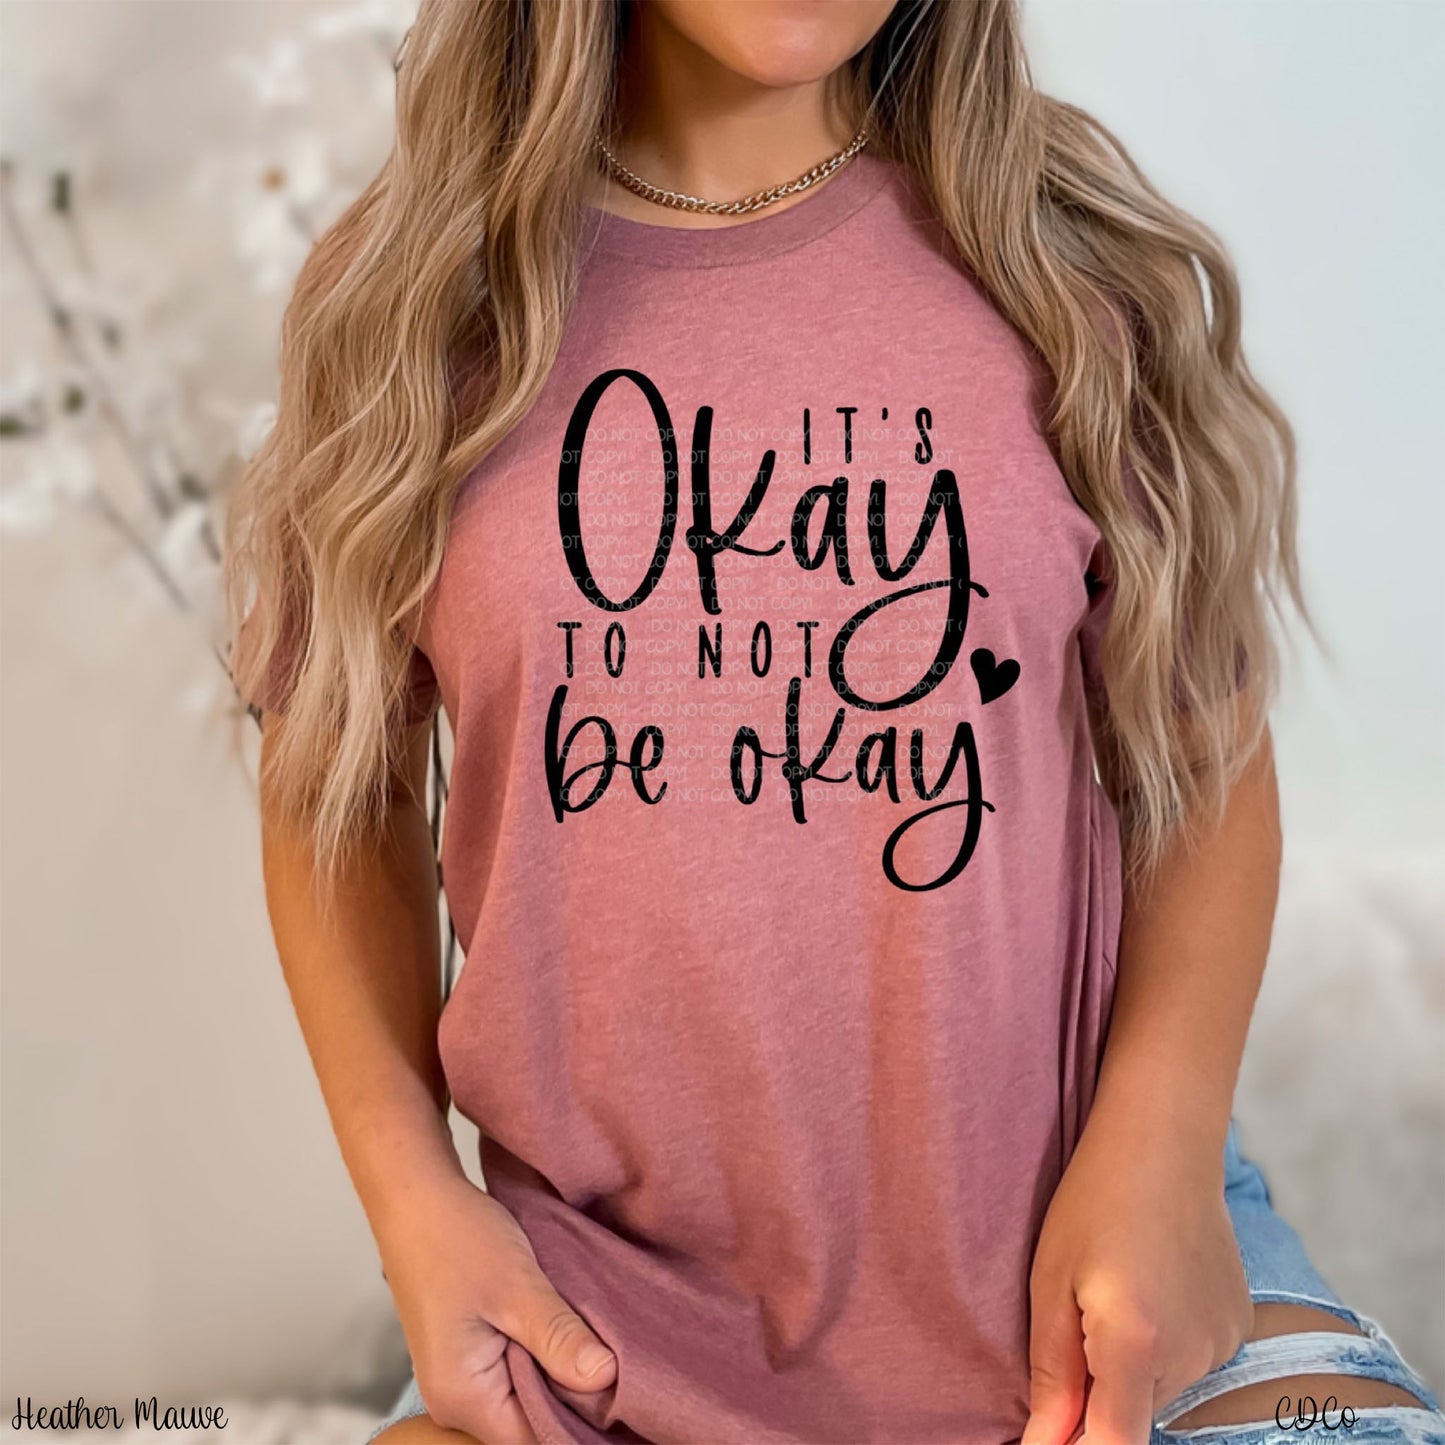 It's Okay to Not Be Okay (325°)